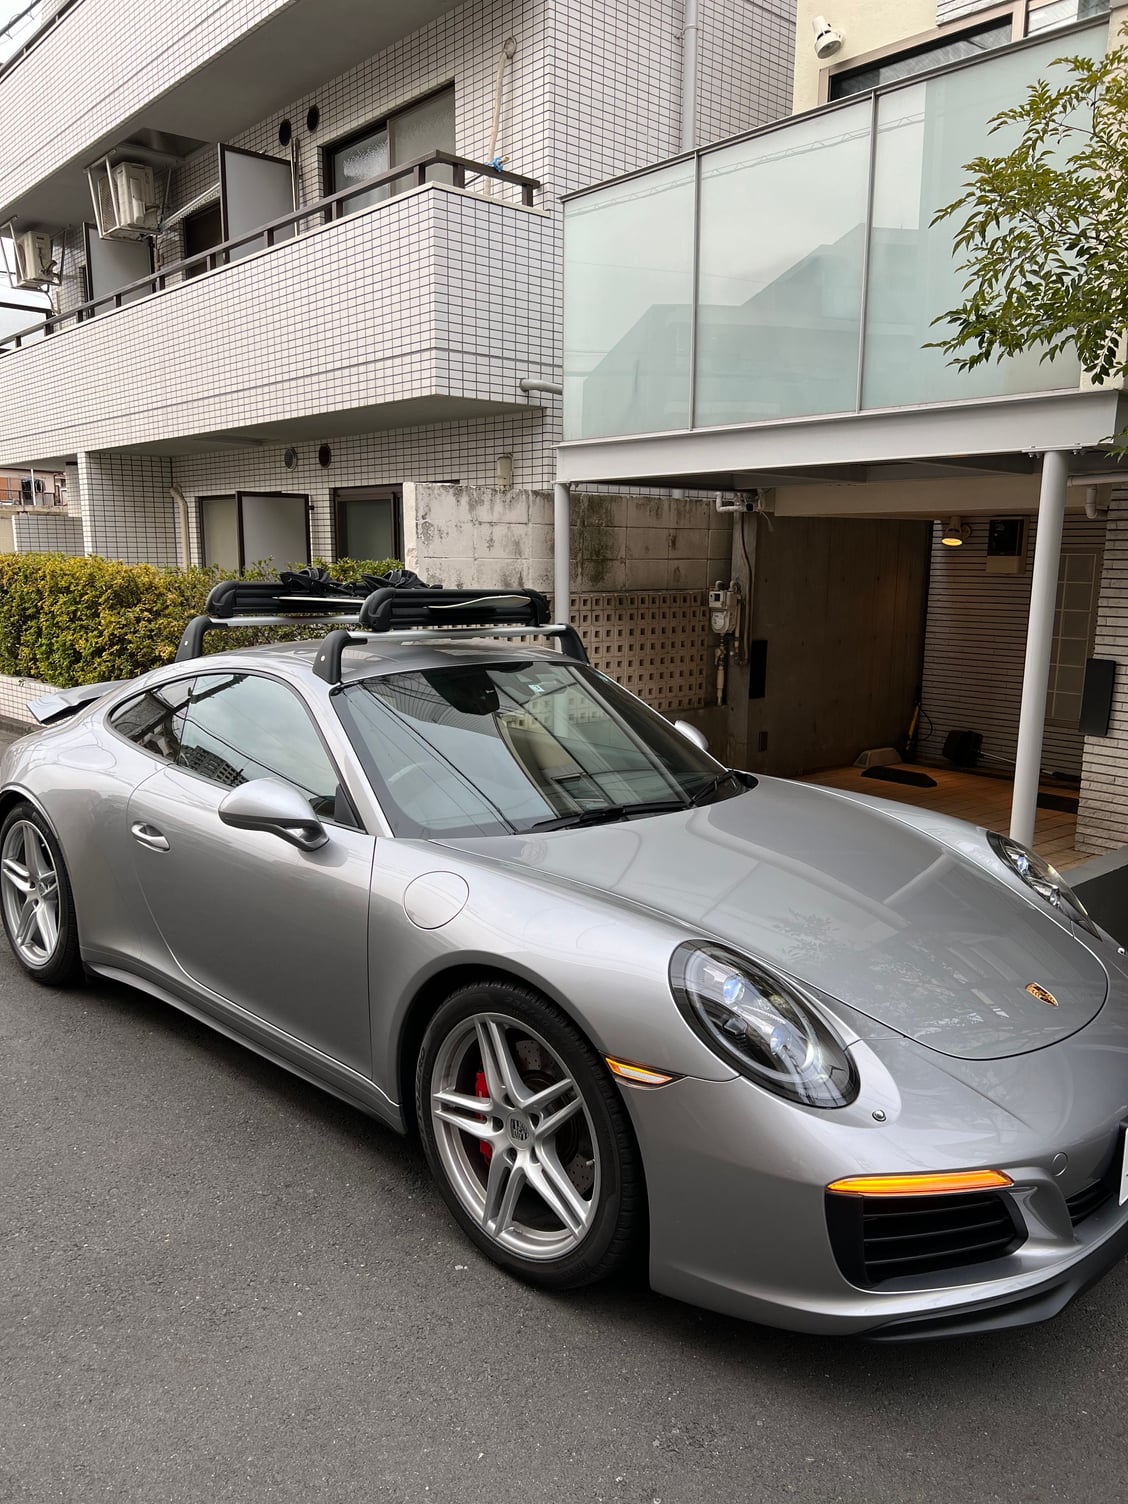 Roof Transport System - Non Porsche Accessory Compatibility - Rennlist -  Porsche Discussion Forums